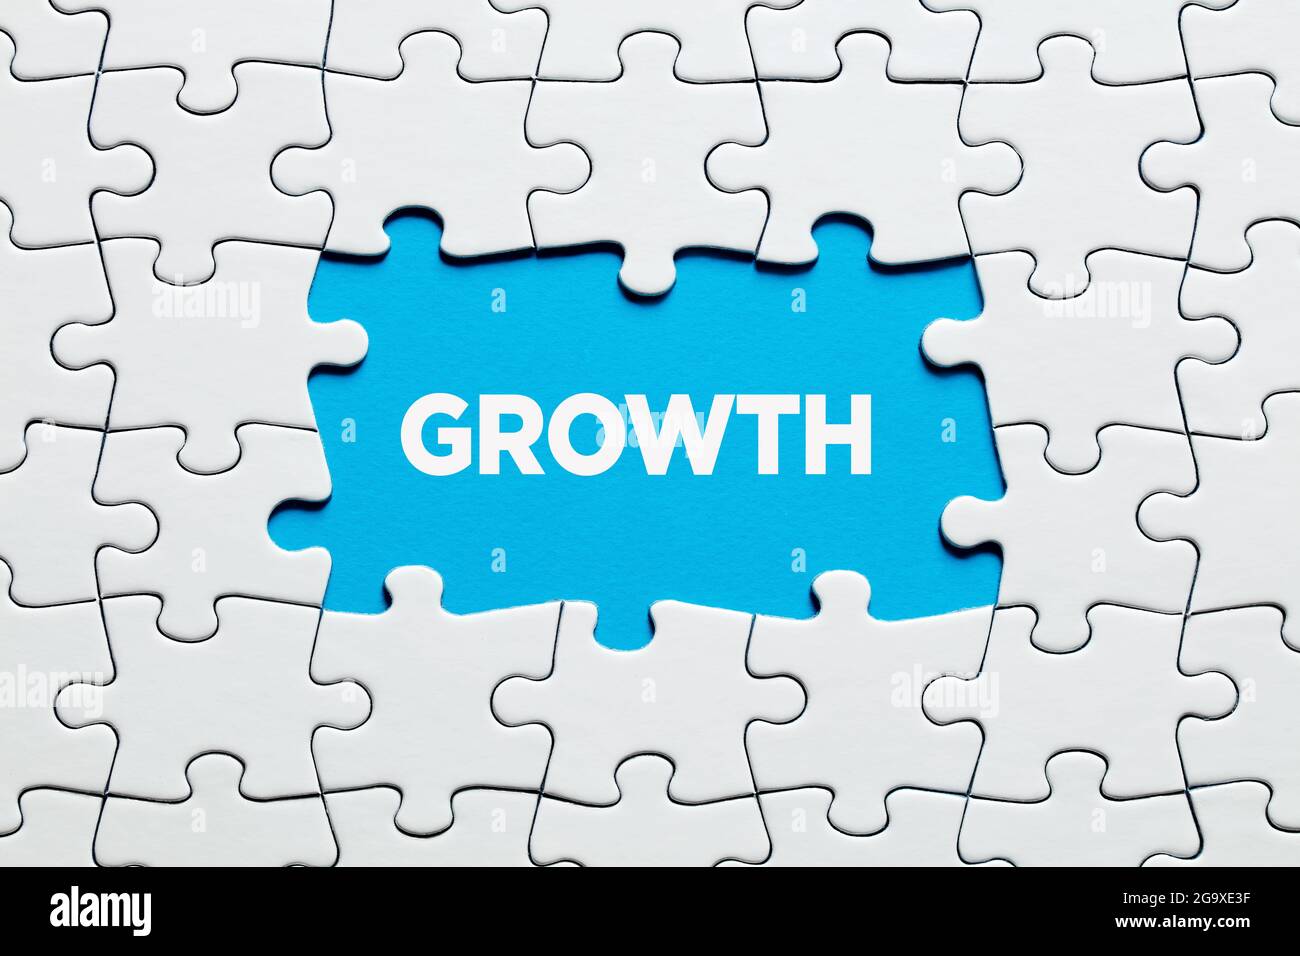 Das Wort Wachstum auf blauem Hintergrund Fragment von weißen Puzzle umgeben. Geschäftliches, finanzielles oder persönliches Wachstum, Verbesserung oder Entwicklung. Stockfoto